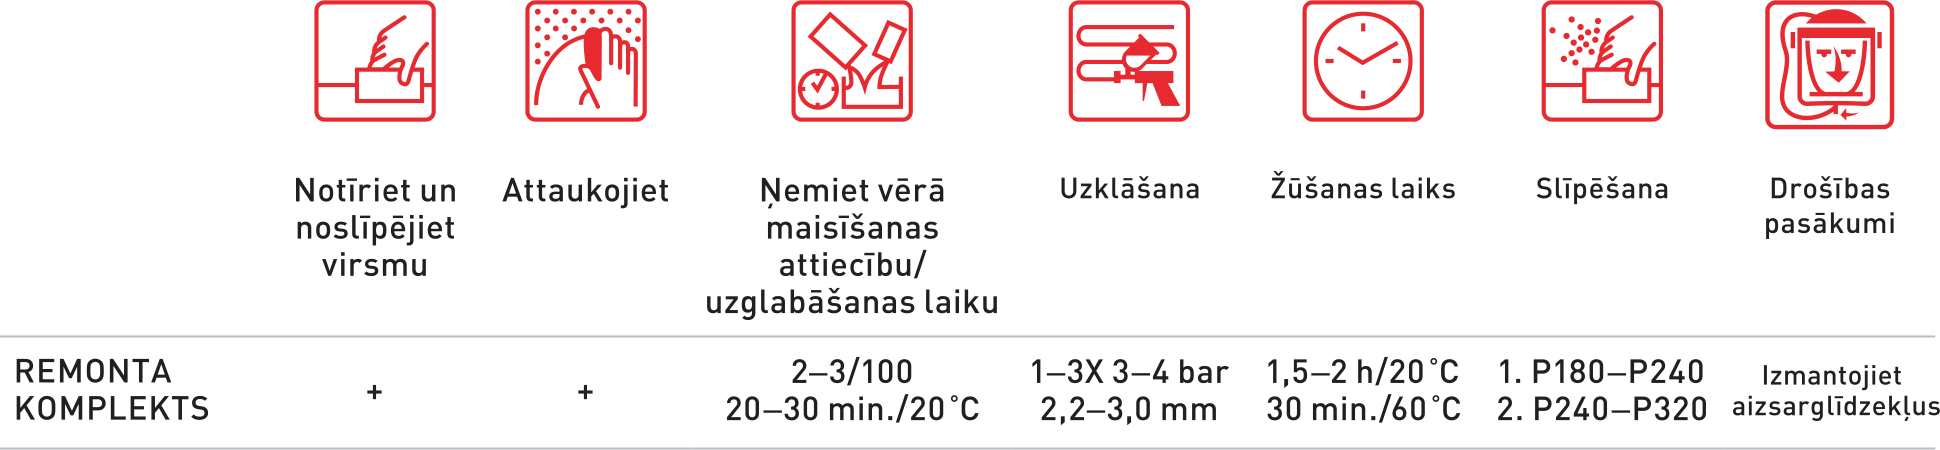 Remonta komplekts ieteikumi latviski